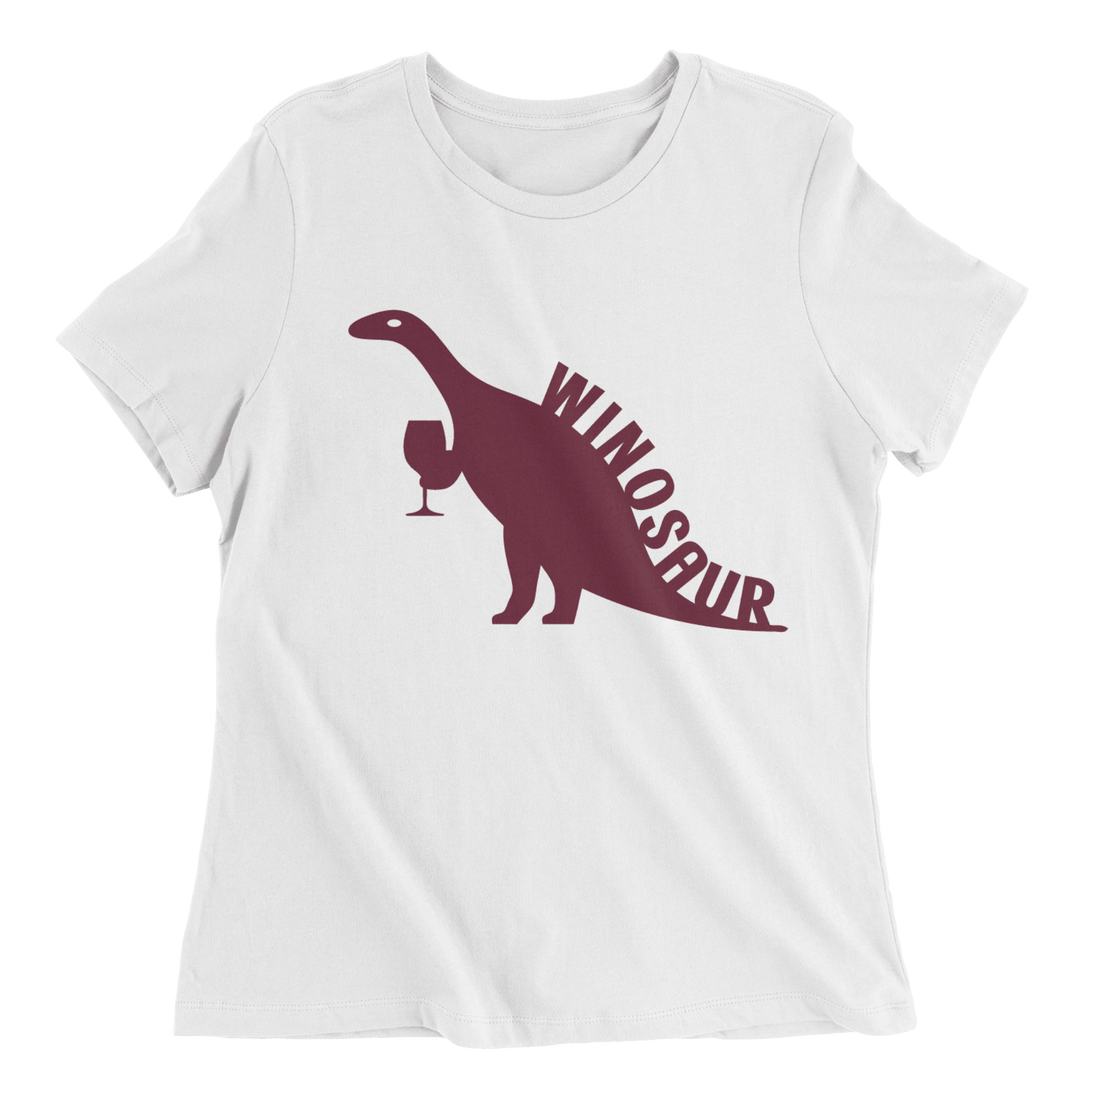 Winosaur - The T-Shirt Deli, Co.